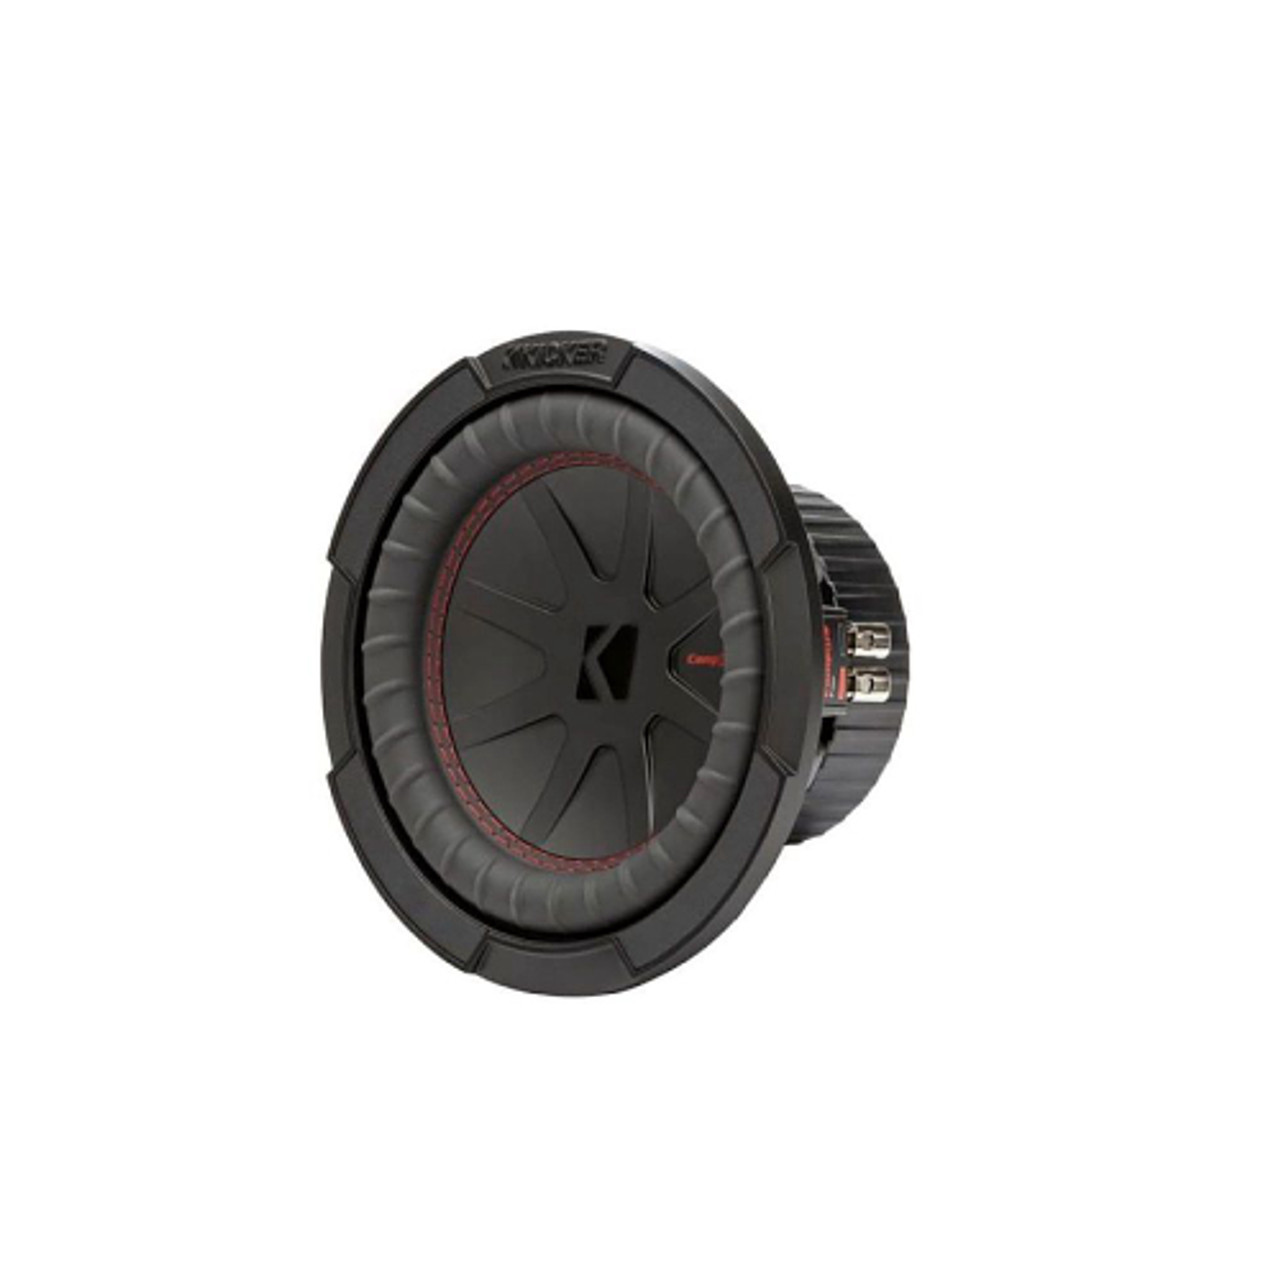 KICKER - CompR 8" Dual-Voice-Coil 2-Ohm Subwoofer - Black